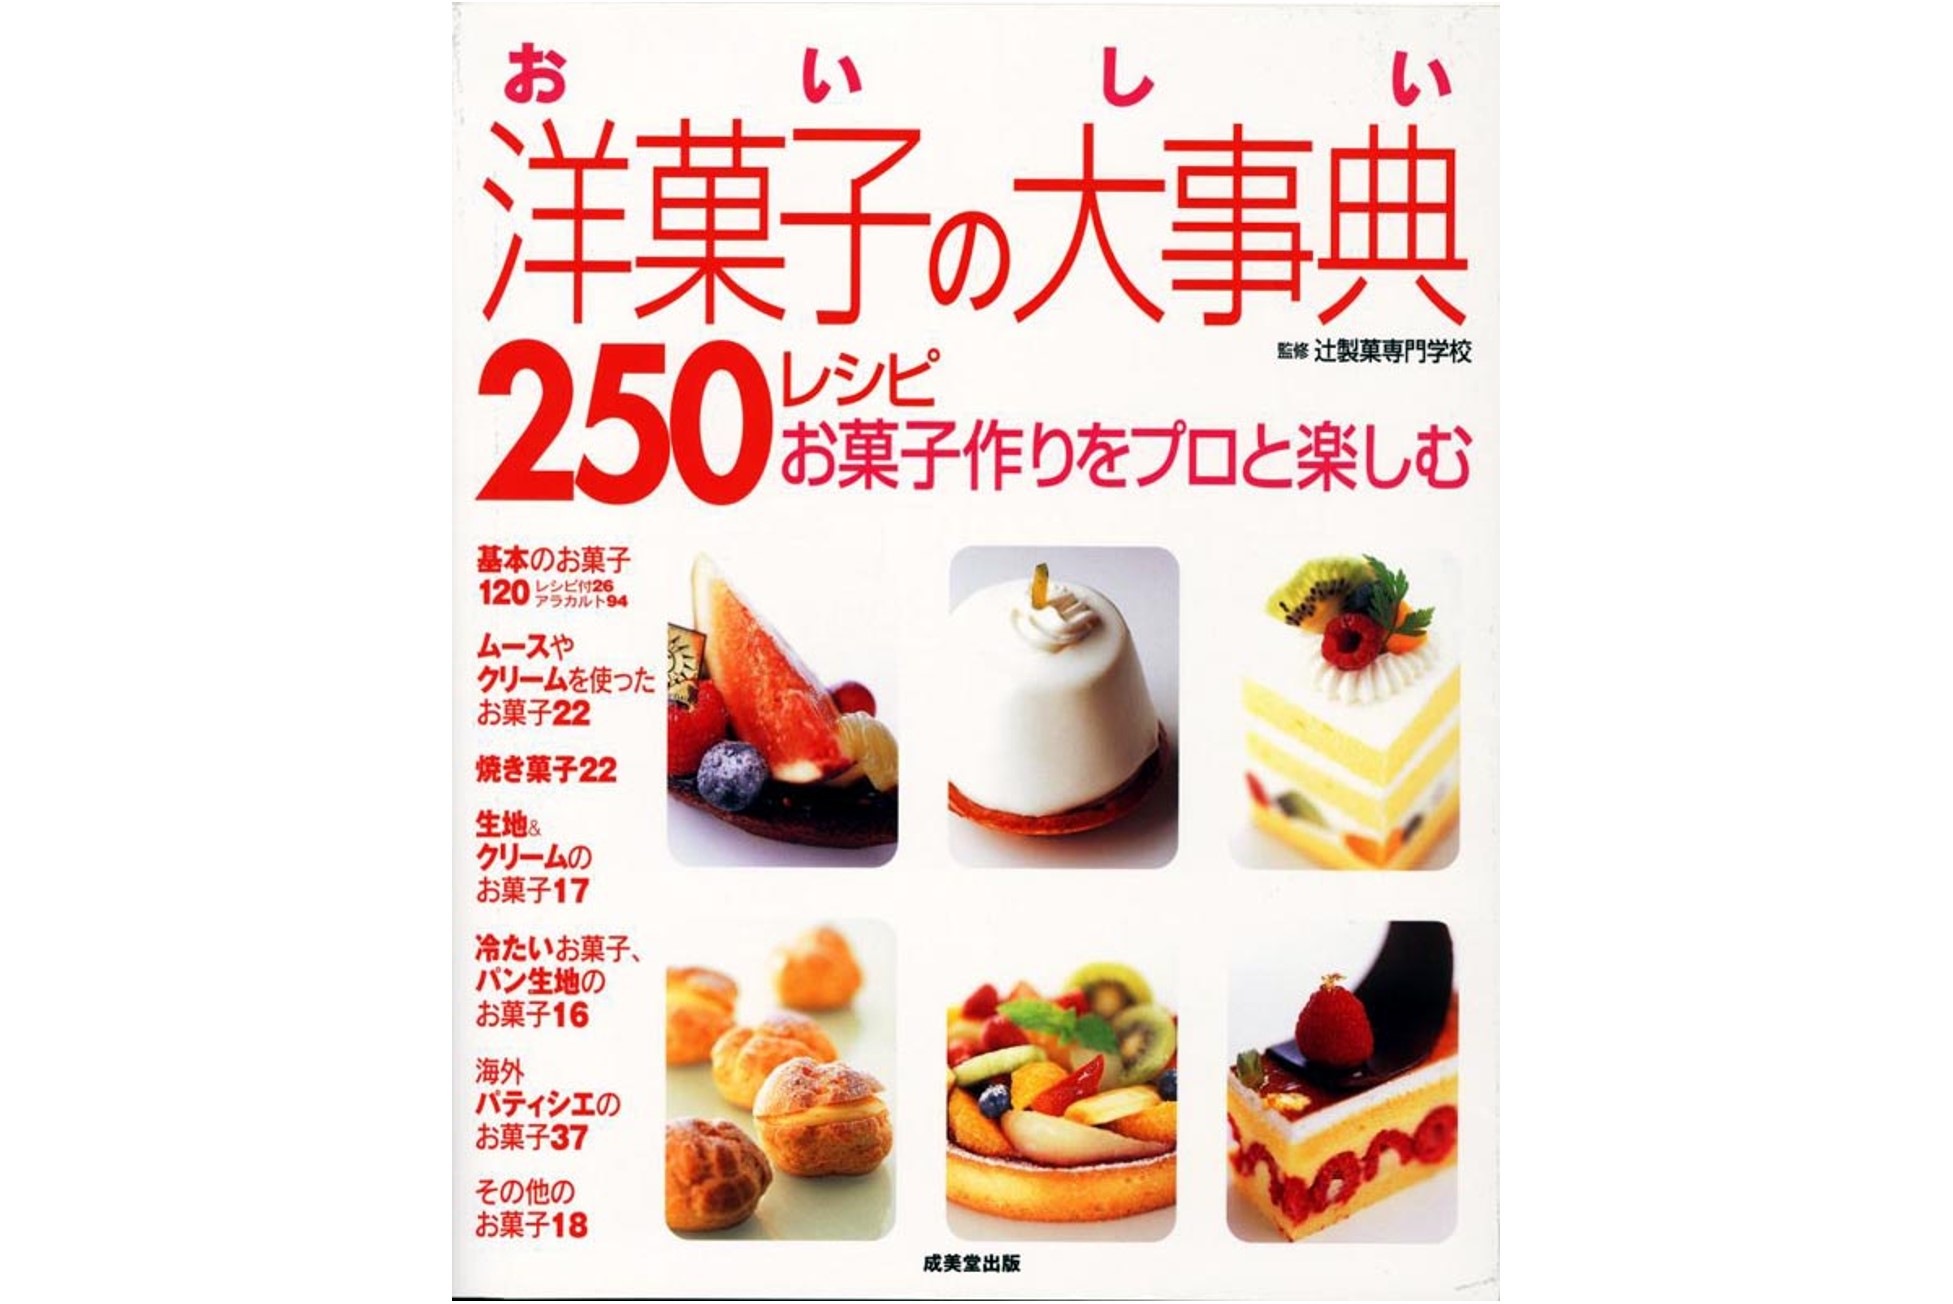 おいしい洋菓子の大事典 250レシピ